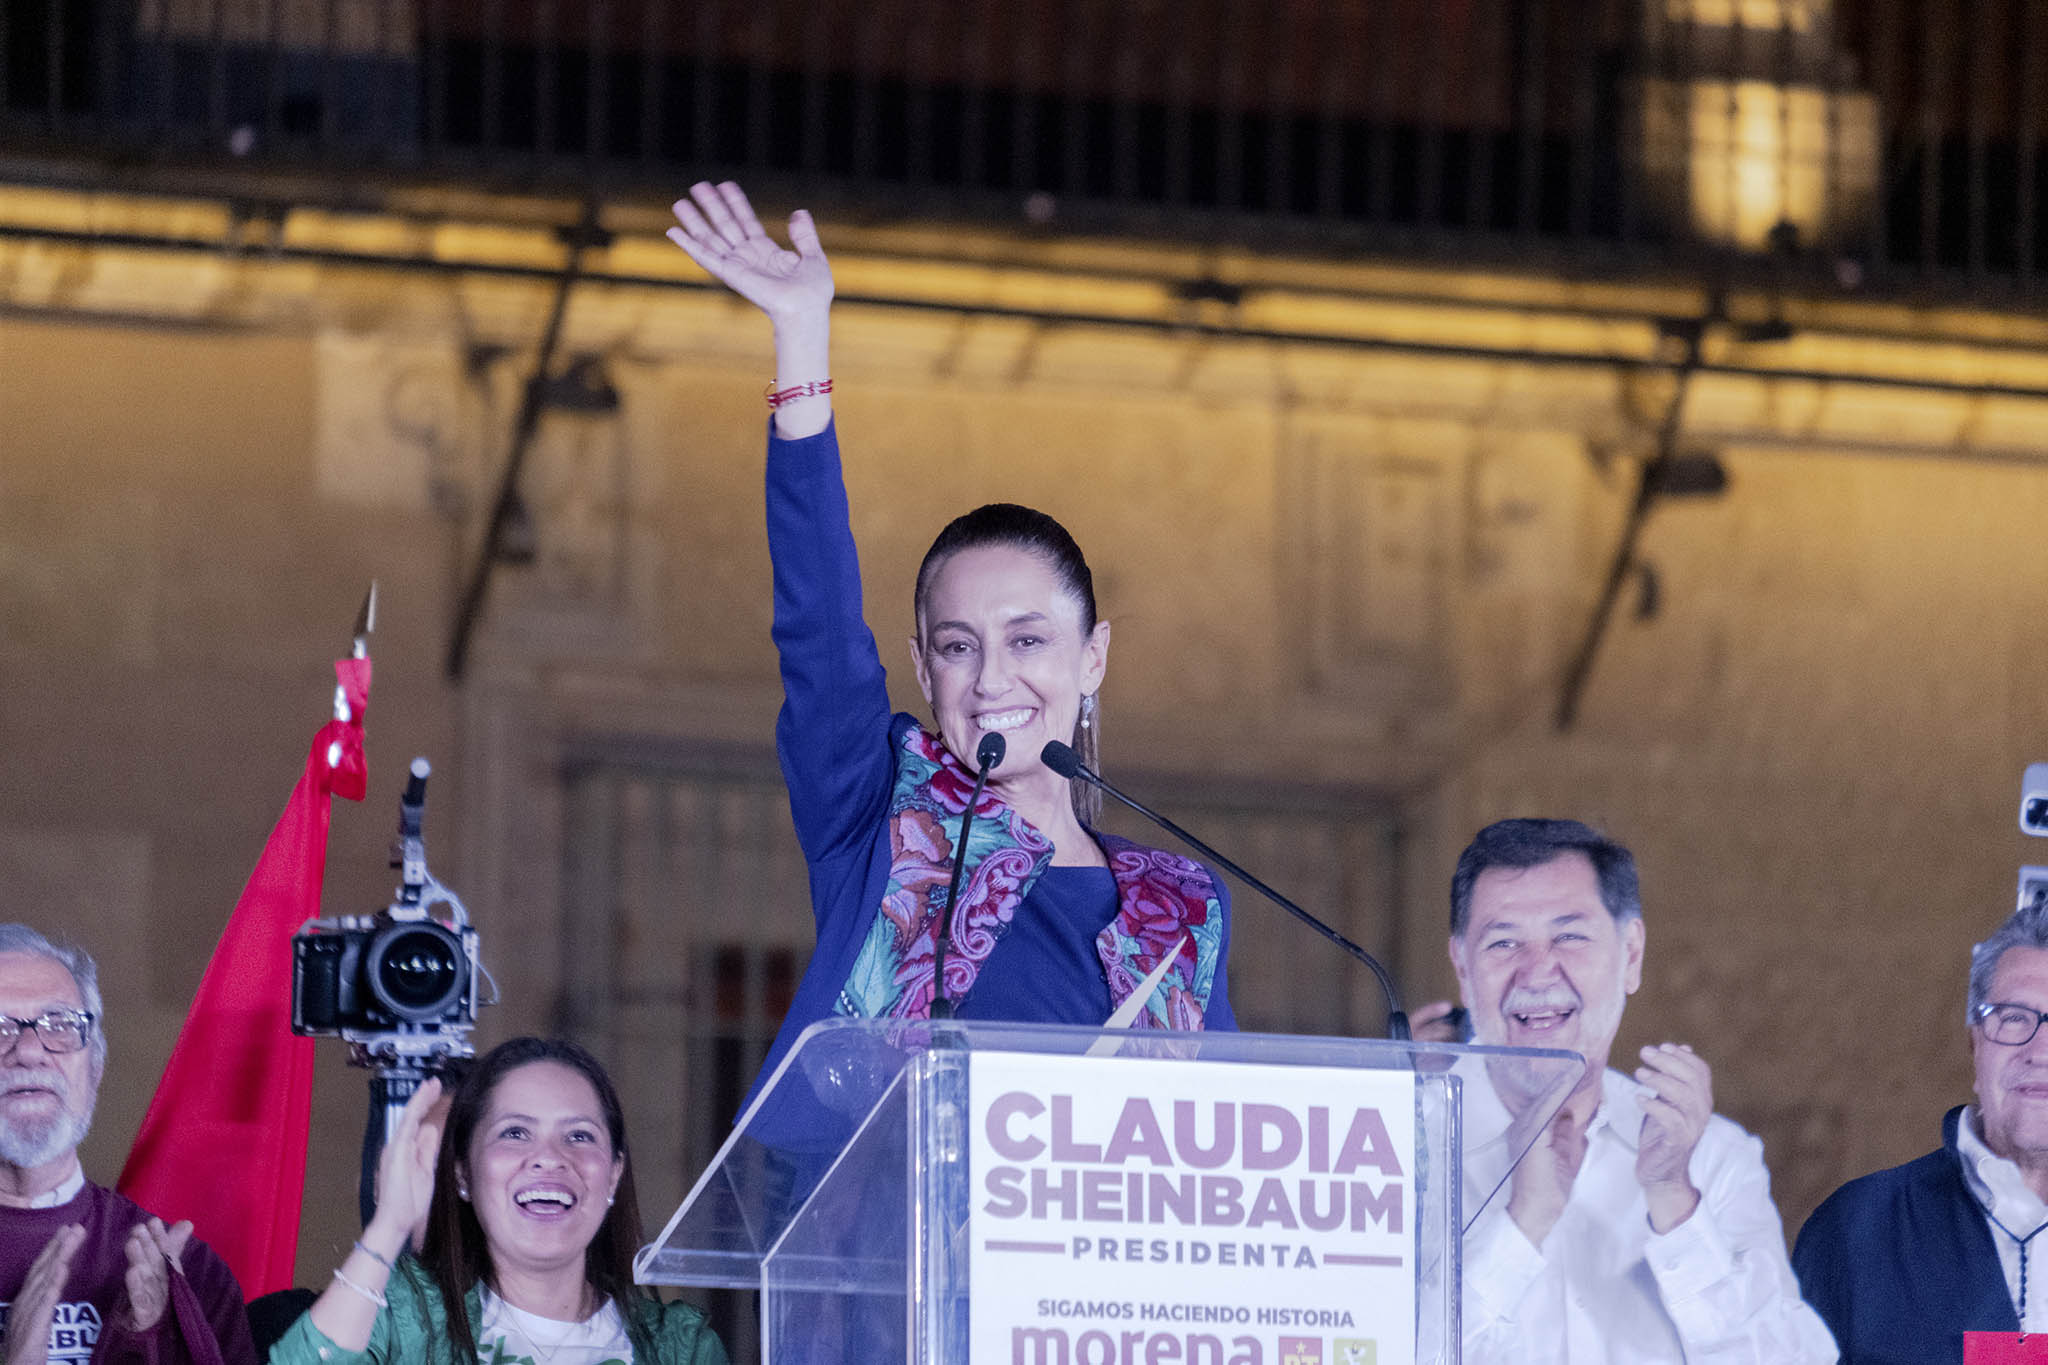 Claudia Sheinbaum, exalcaldesa de la Ciudad de México, es la primera mujer y la primera persona judía en ser elegida presidenta de México. (Fred Ramos/The New York Times)